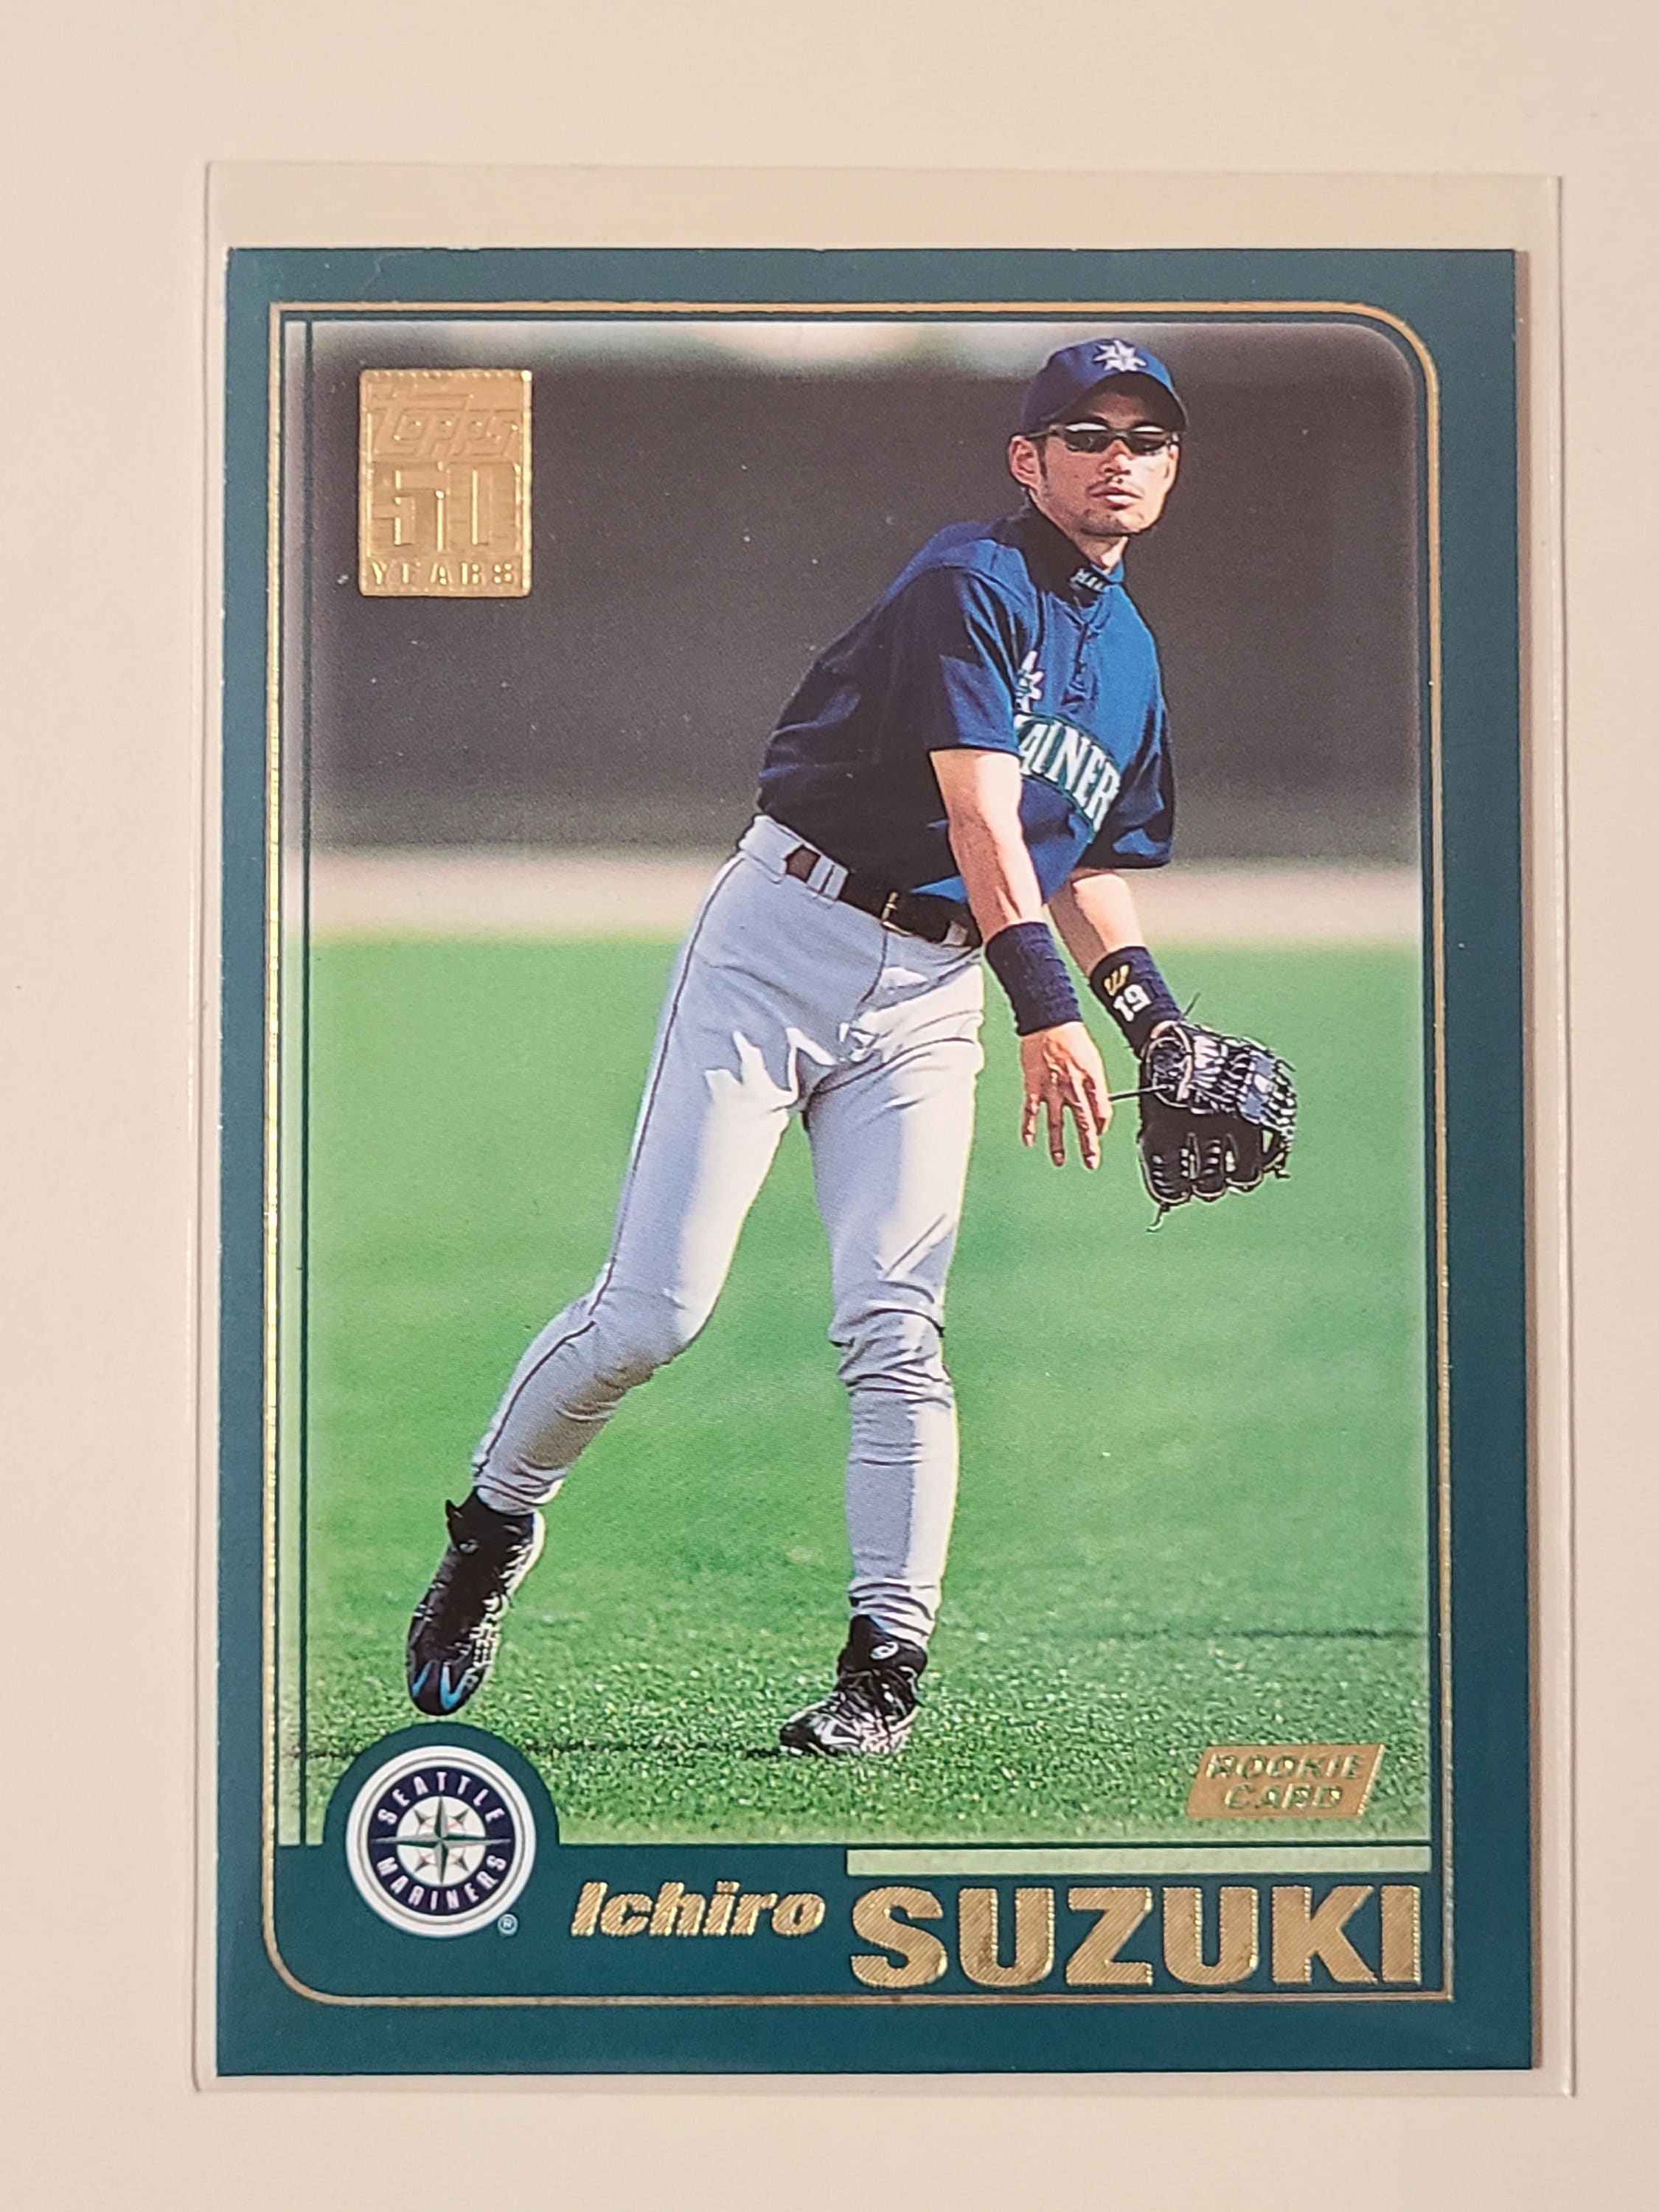 2001 Topps Ichiro Suzuki RC Rookie Baseball Card